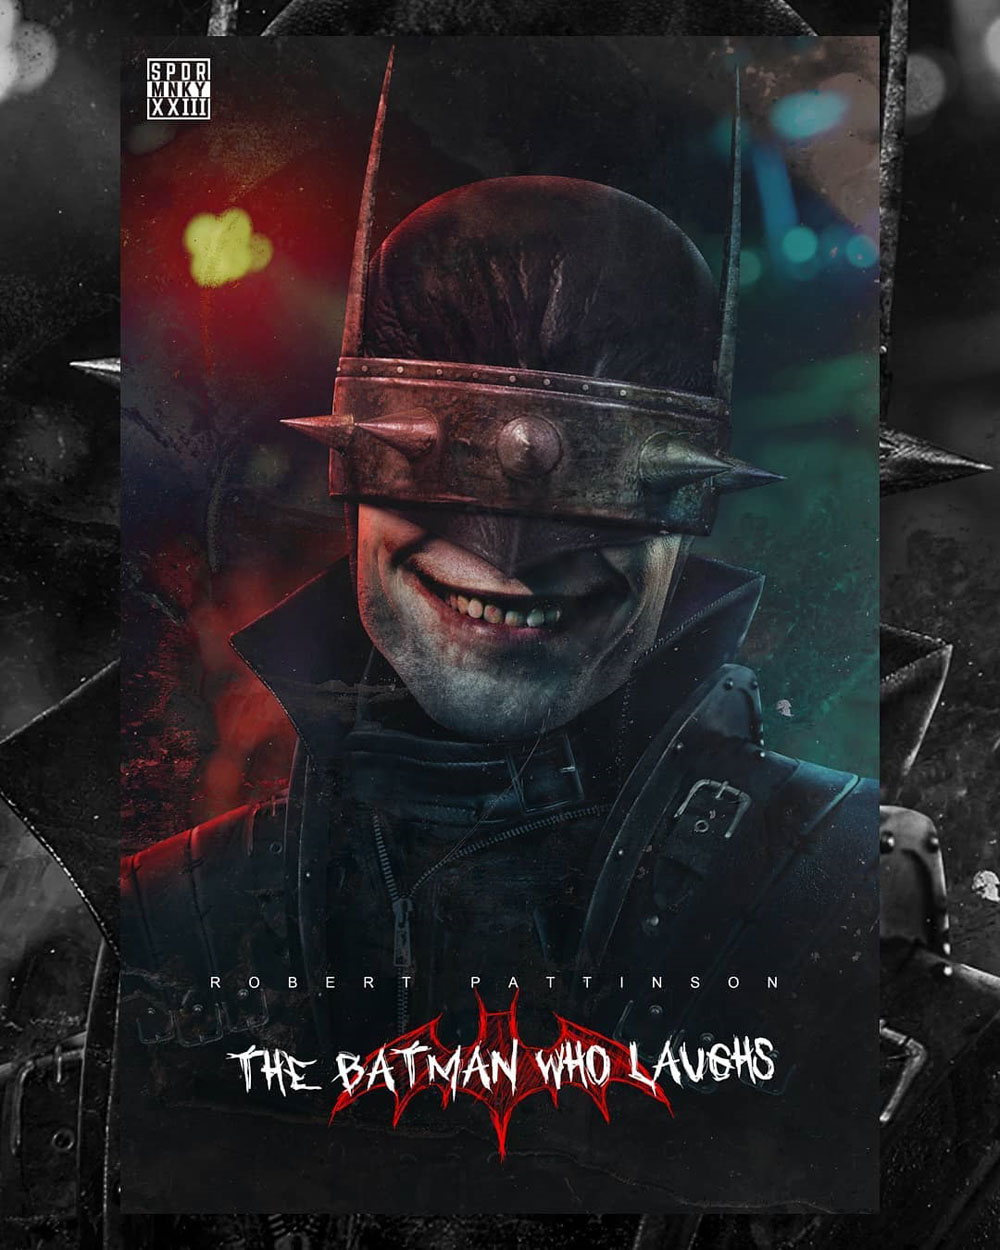 Роберт Паттинсон в роли смеющегося злого Бэтмена, арт SPDRMNKYXXIII